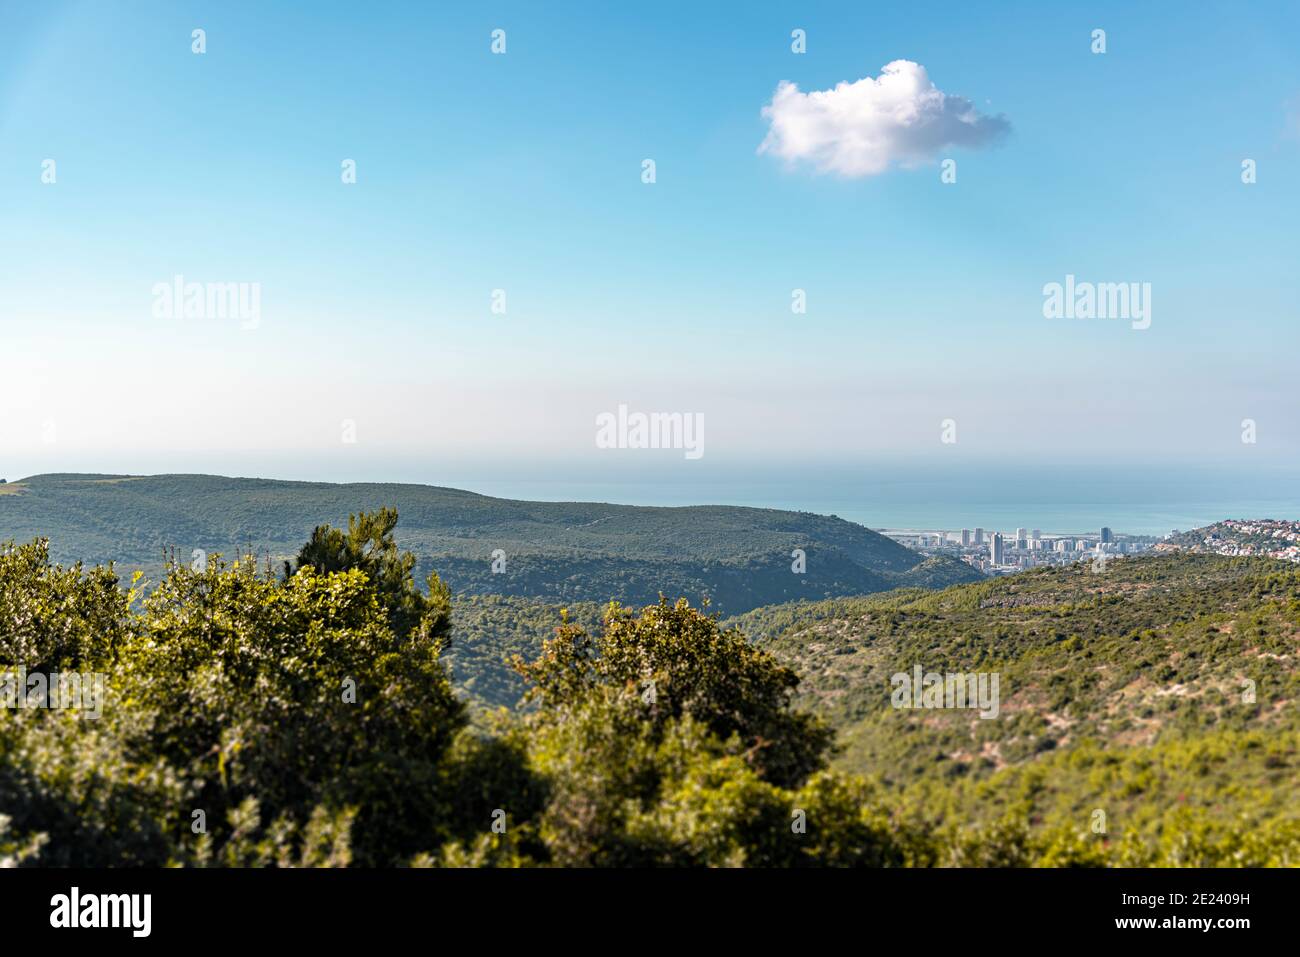 Vista del bosque, el mar y la ciudad bajo un cielo azul. Una vista del Monte  Carmelo, pequeña Suiza, con vistas a la ciudad de Haifa desde arriba.  Israel. Foto de alta